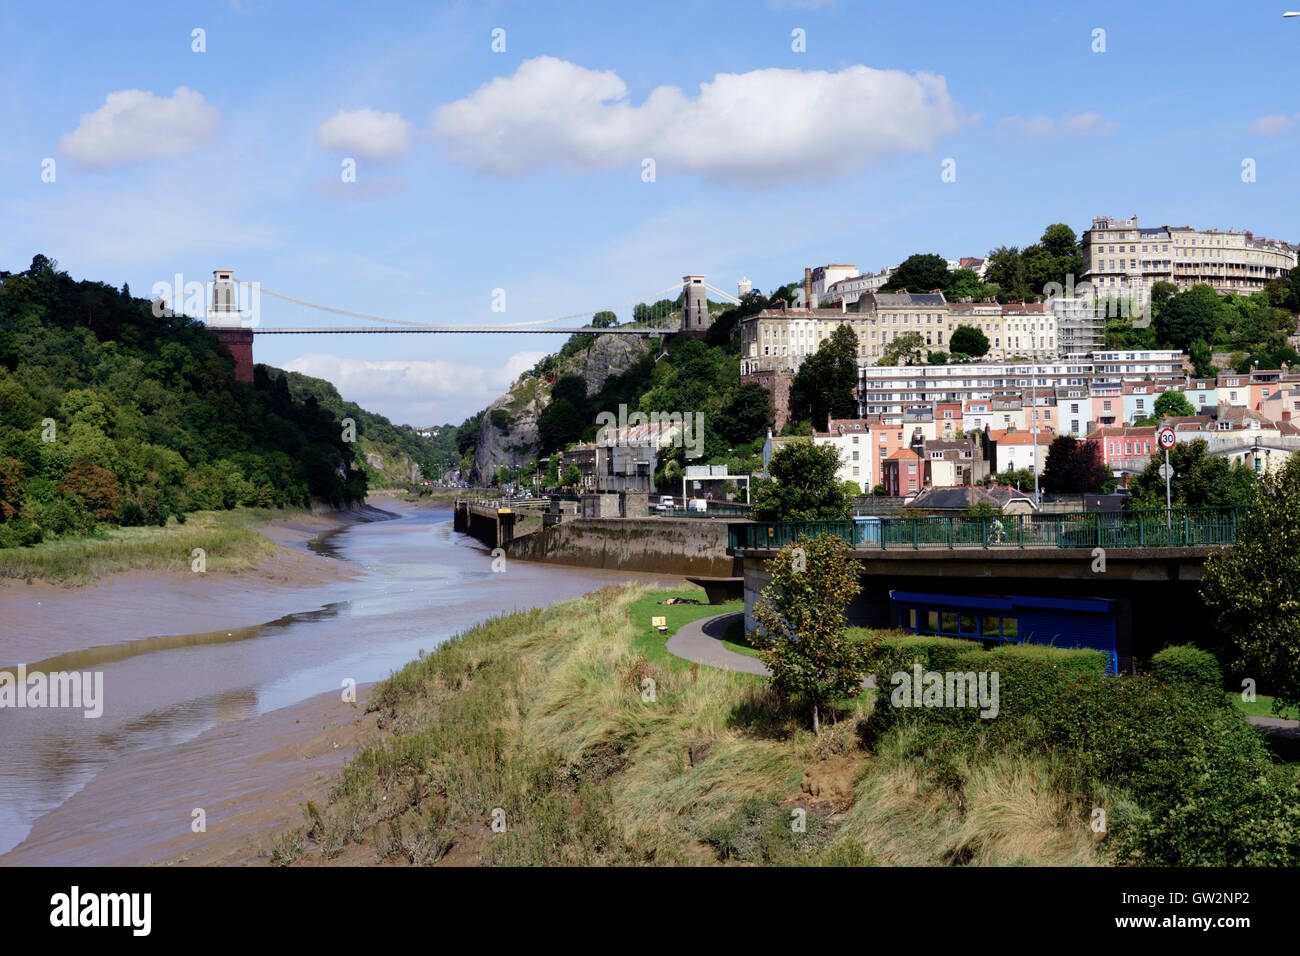 Intorno a Bristol City e per il porto Inghilterra REGNO UNITO Clifton Suspension Bridge Foto Stock